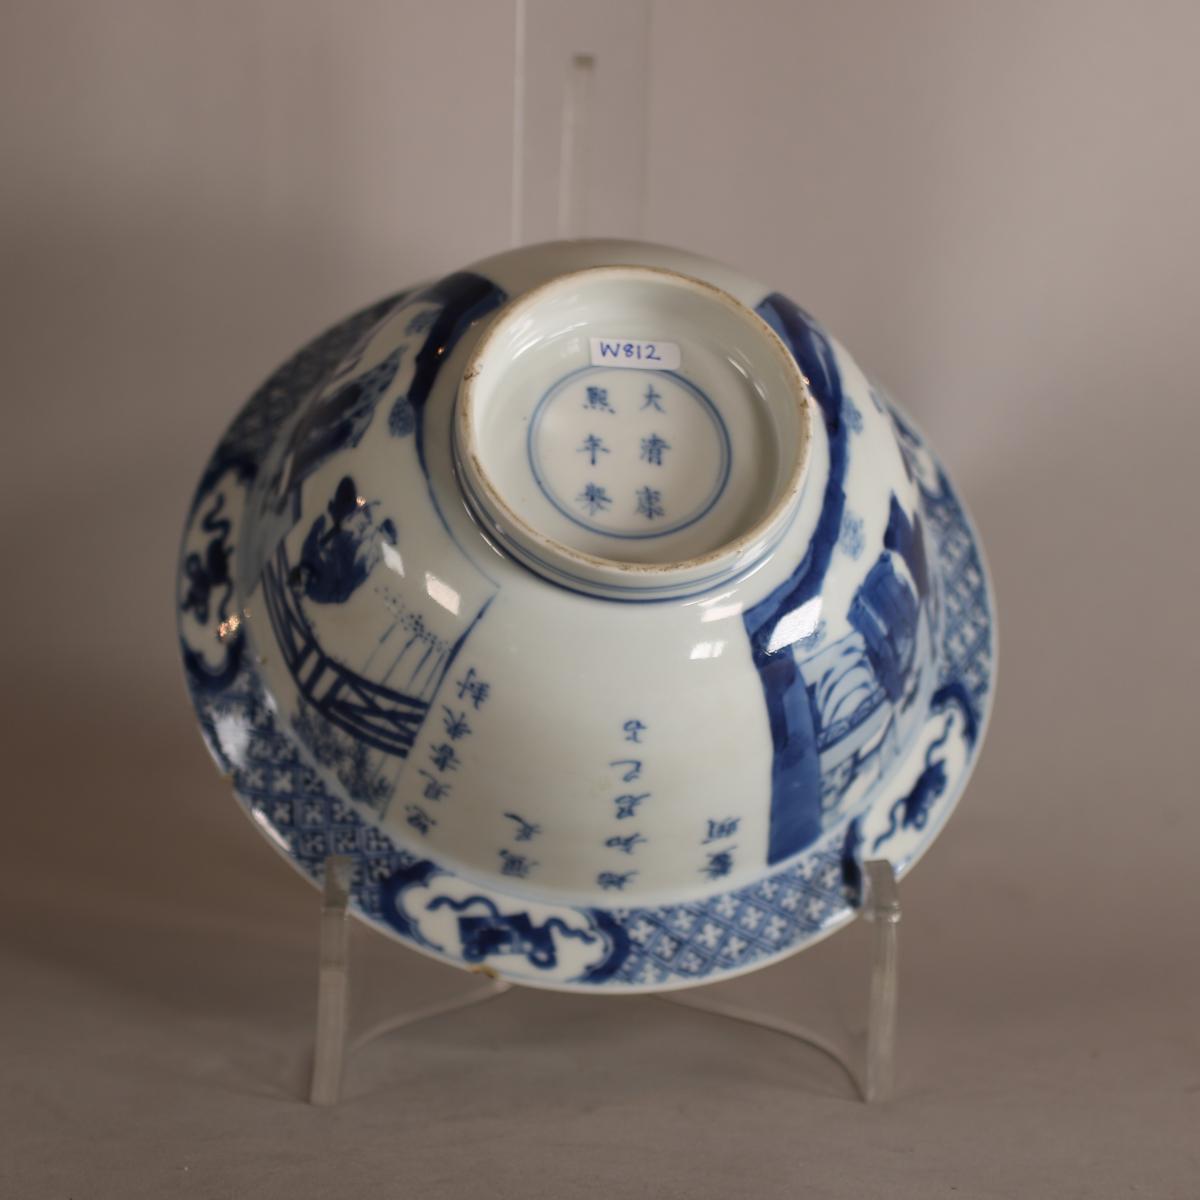 Base of Chinese blue and white klapmutz bowl with Kangxi mark